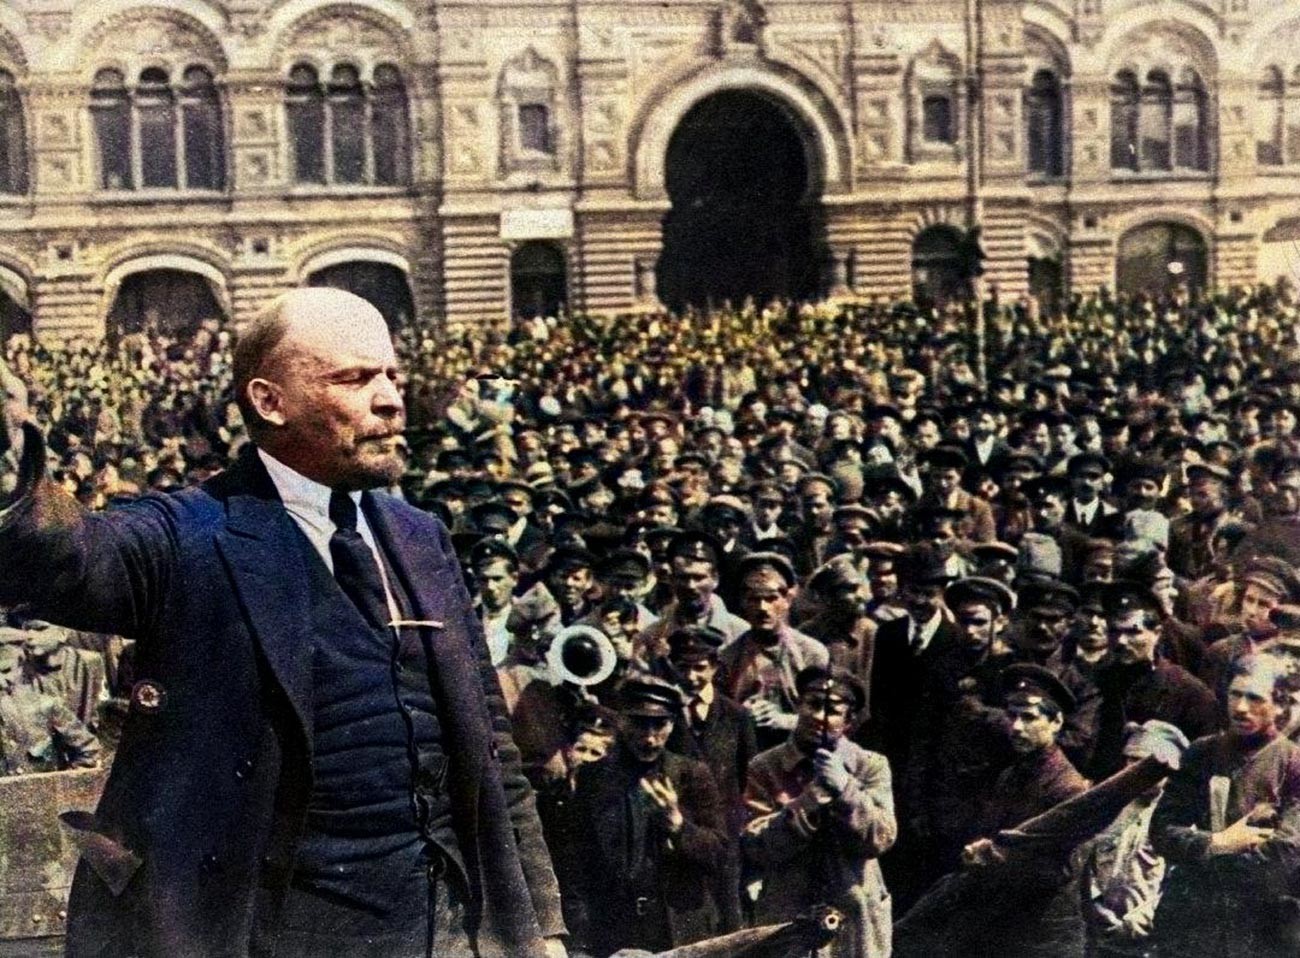 Vladimir Lenin speaking in Moscow